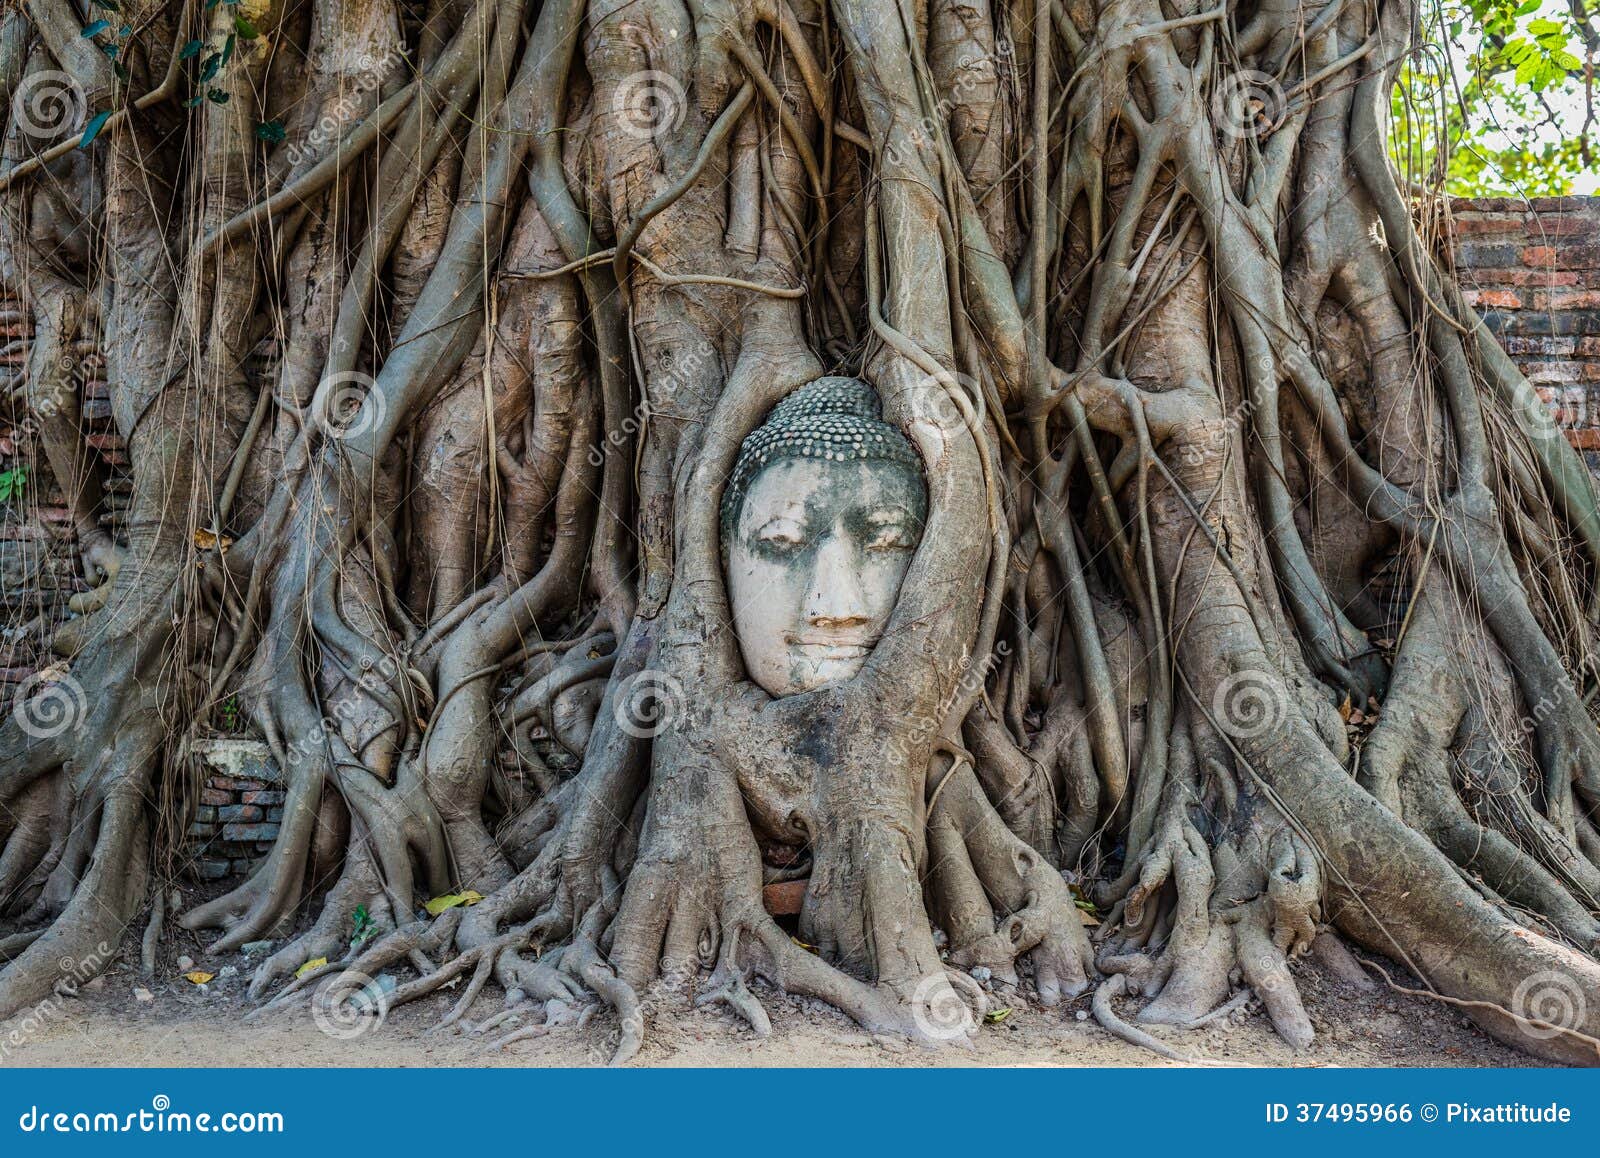 buddha head banyan tree wat mahathat ayutthaya bangkok thailand